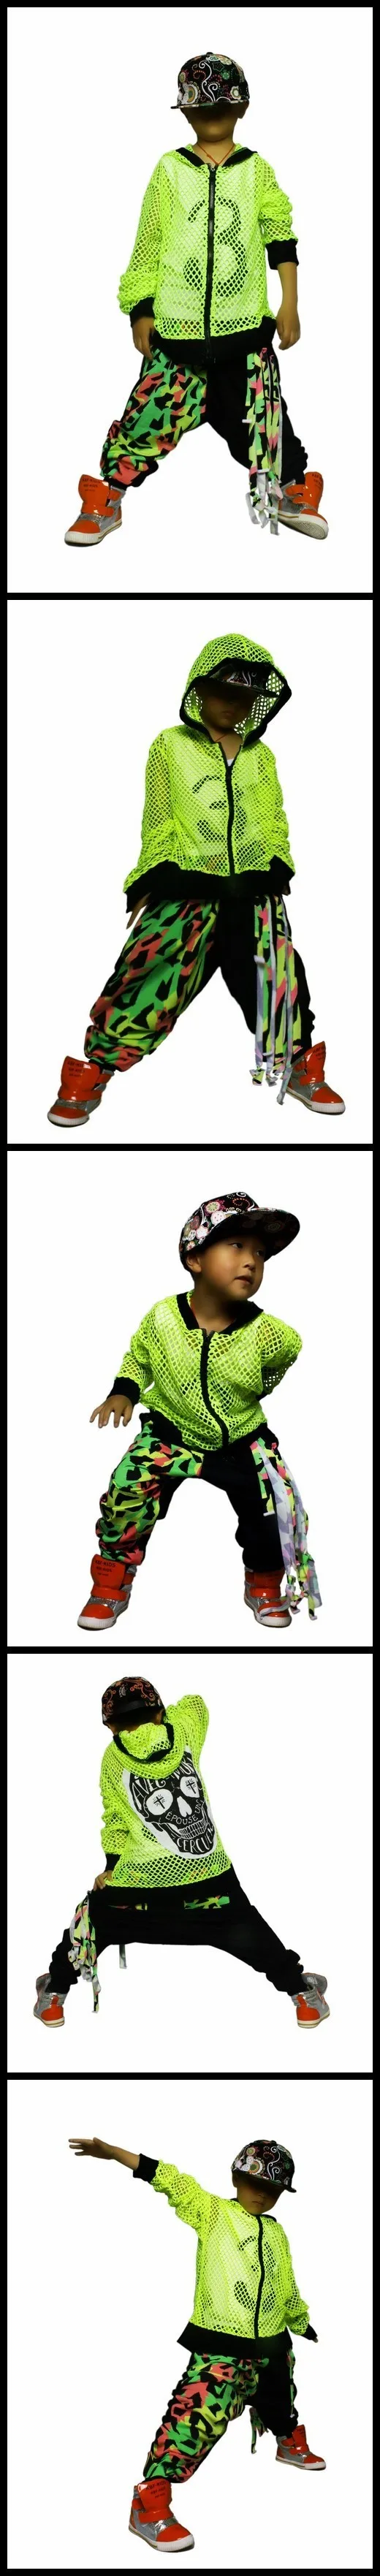 Детские штаны; Коллекция года; модные спортивные штаны в стиле хип-хоп; костюм для джазовых танцев; Разноцветные разноцветные штаны-шаровары в стиле пэчворк; спортивные штаны в стиле хип-хоп